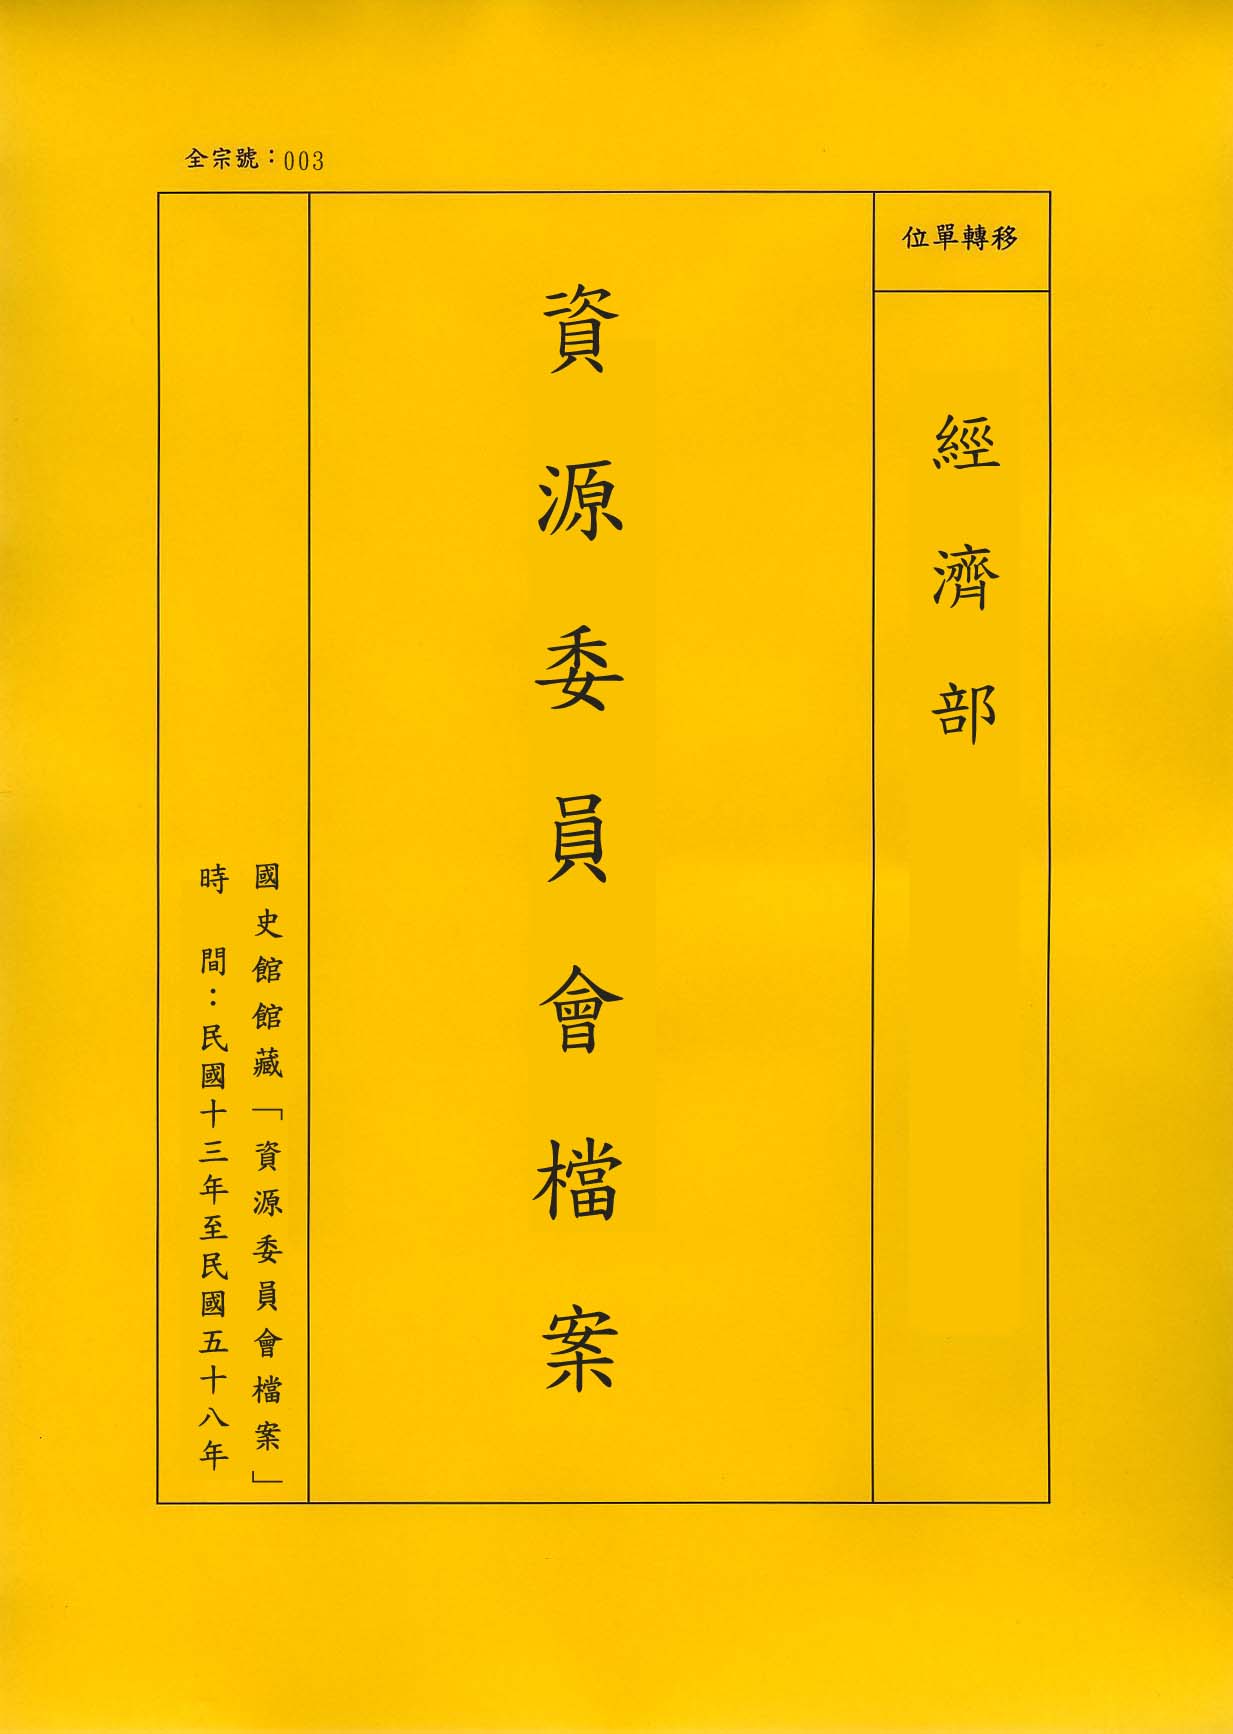 卷名:資源委員會與歐陽藻八月份來往函件副本Yellow Copies between Na(003-020600-2851)